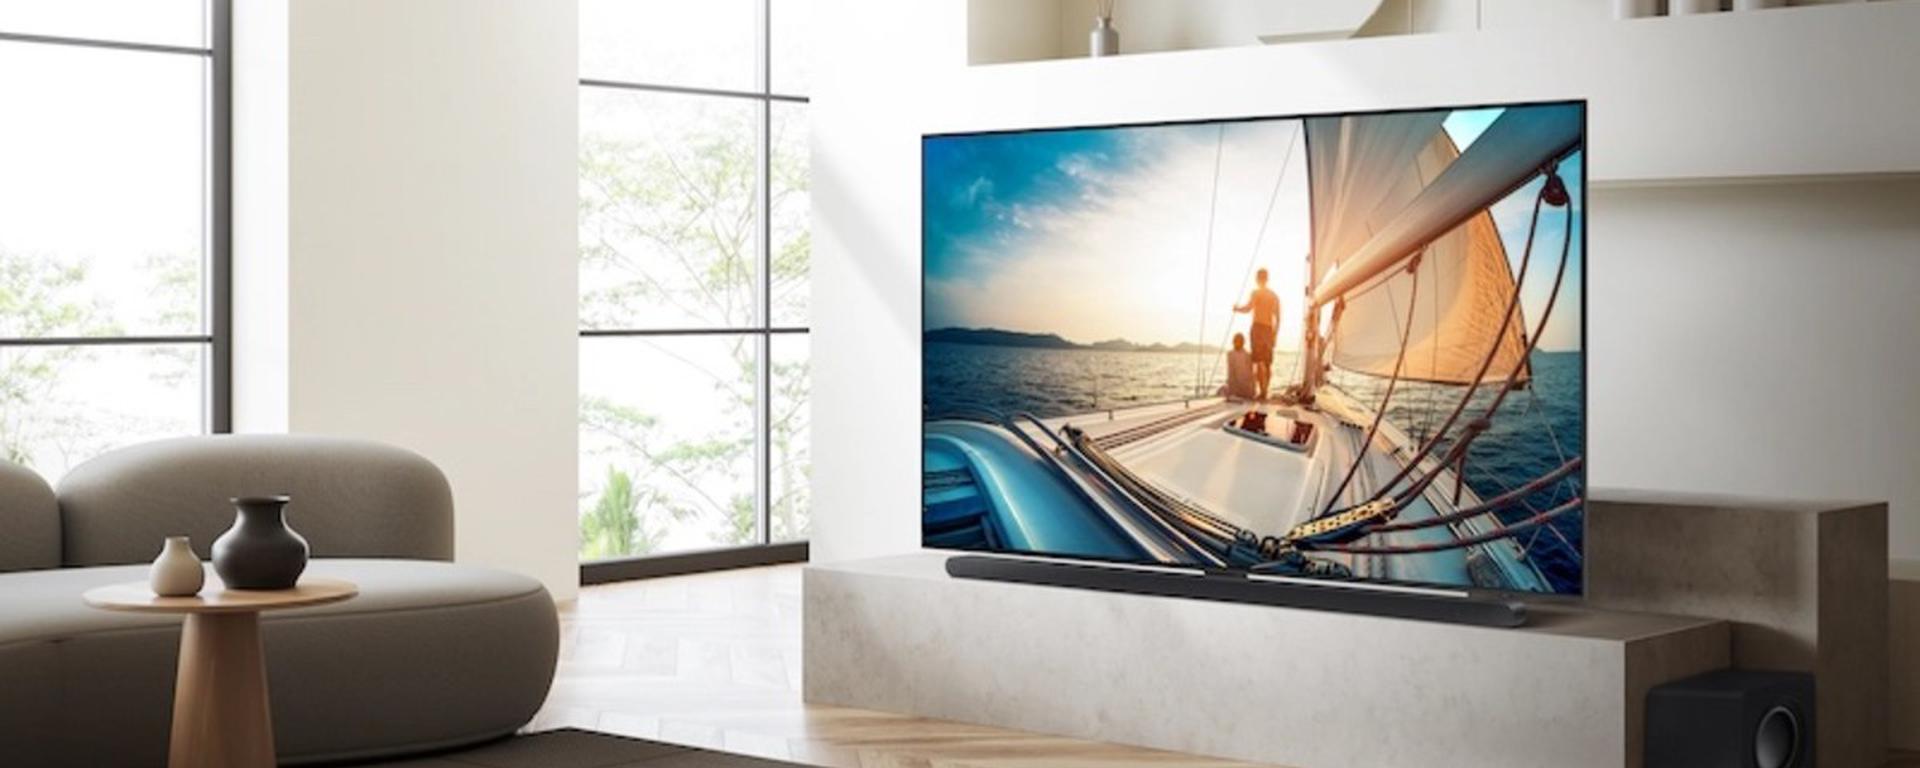 Probamos el Neo QLED QN90C, una TV que quiere llevar el entretenimiento a otro nivel | REVIEW